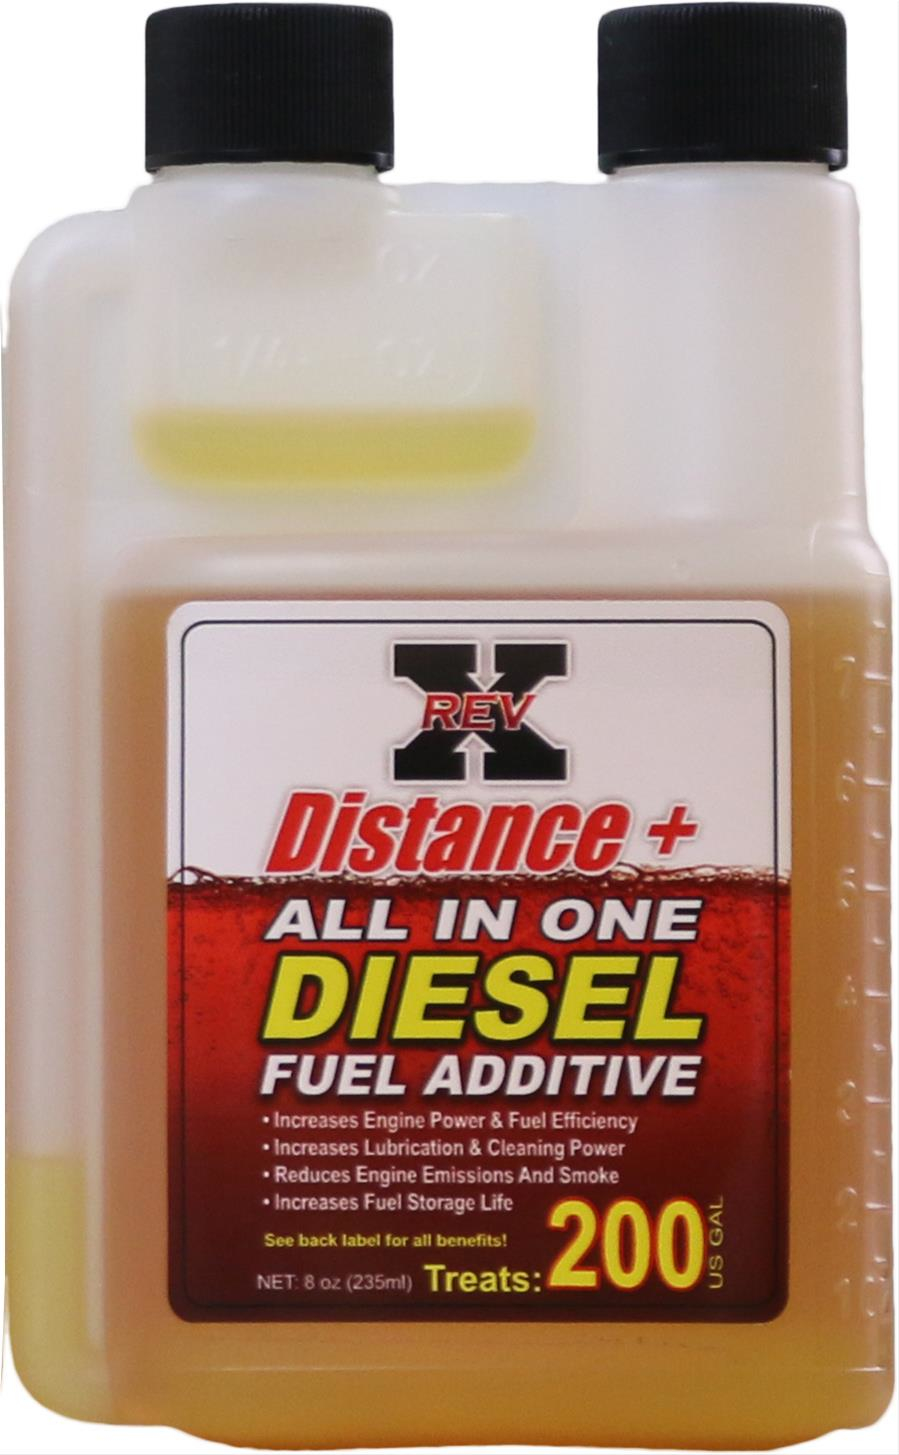 Rev-X Distance+ Diesel Fuel Additive